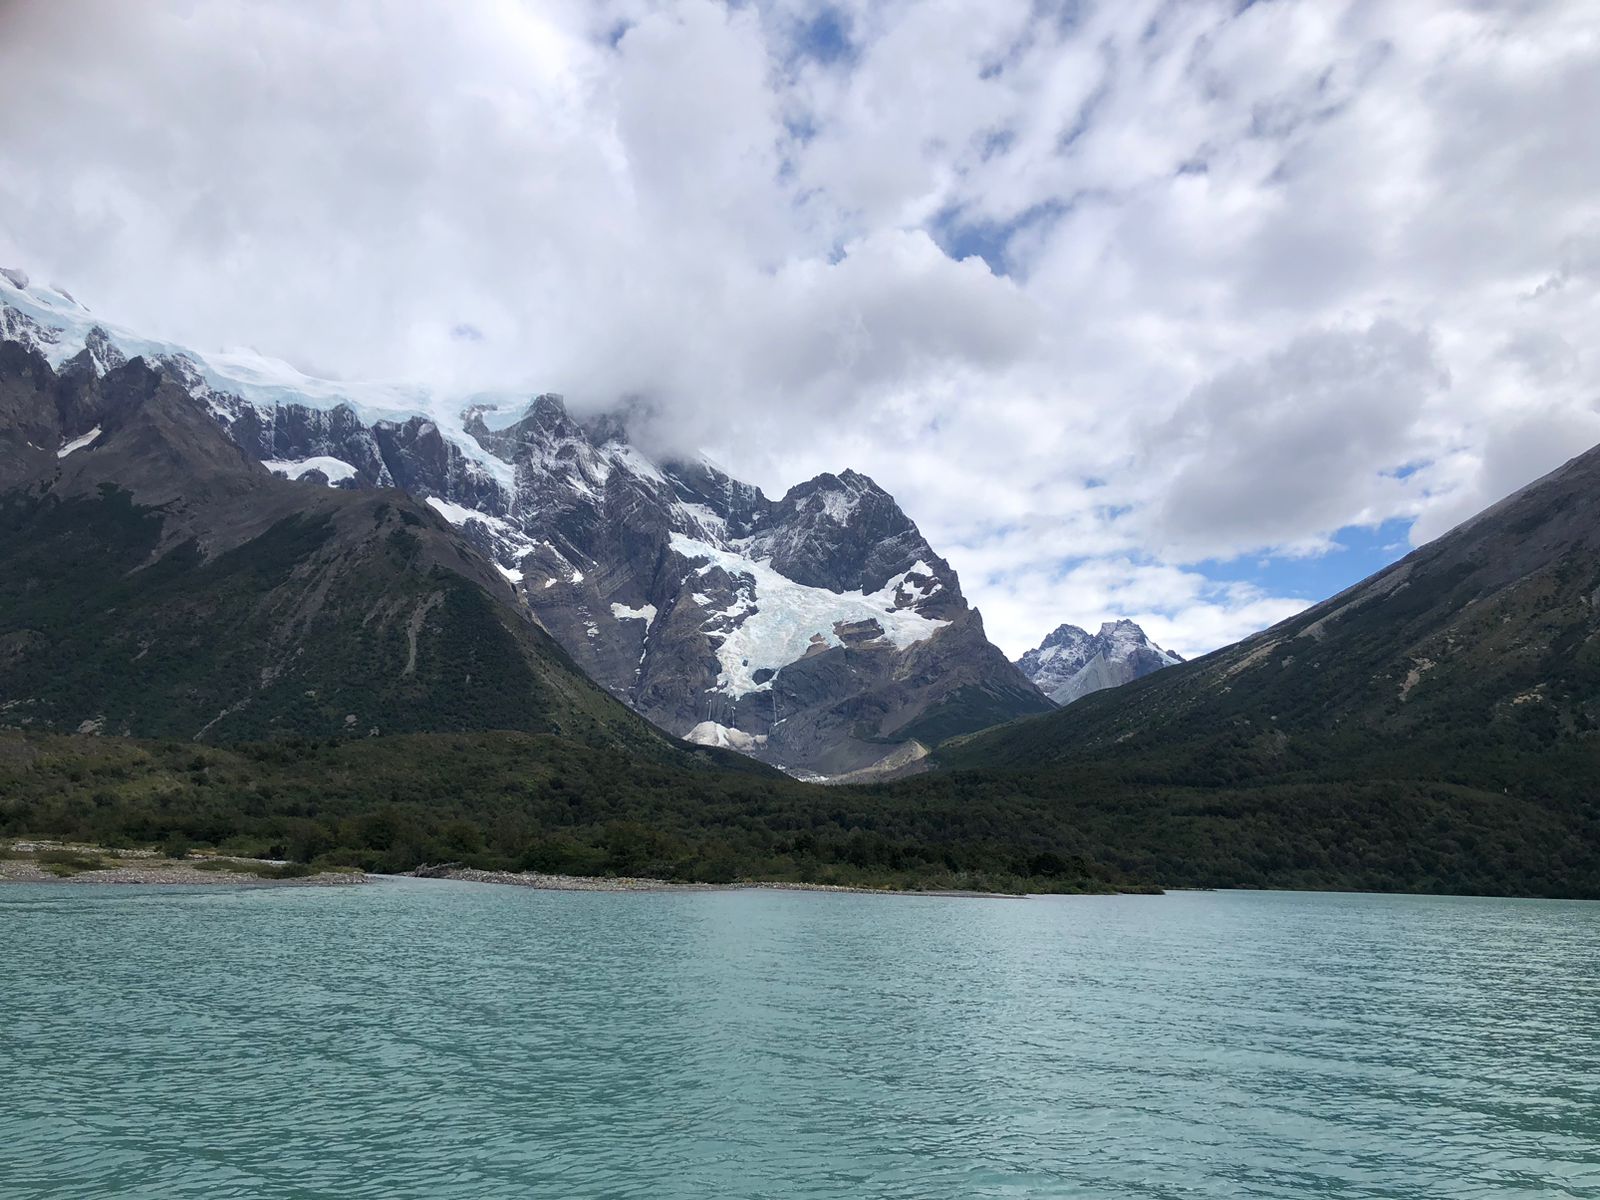 Fallecido fue encontrado el trabajador extraviado en Parque Nacional Torres del Paine